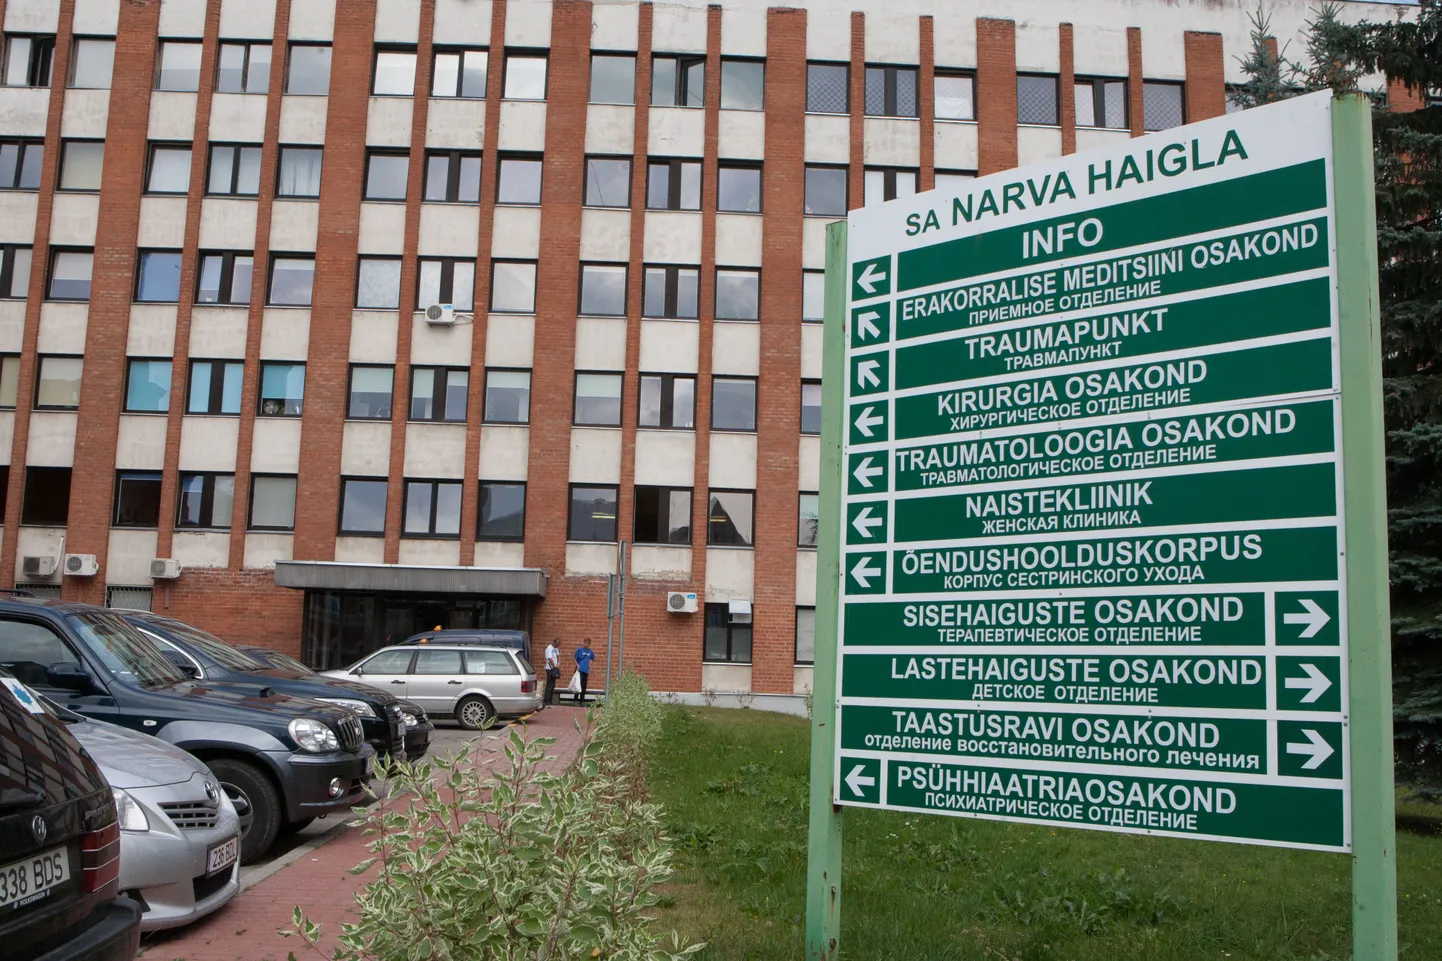 Narva haigla